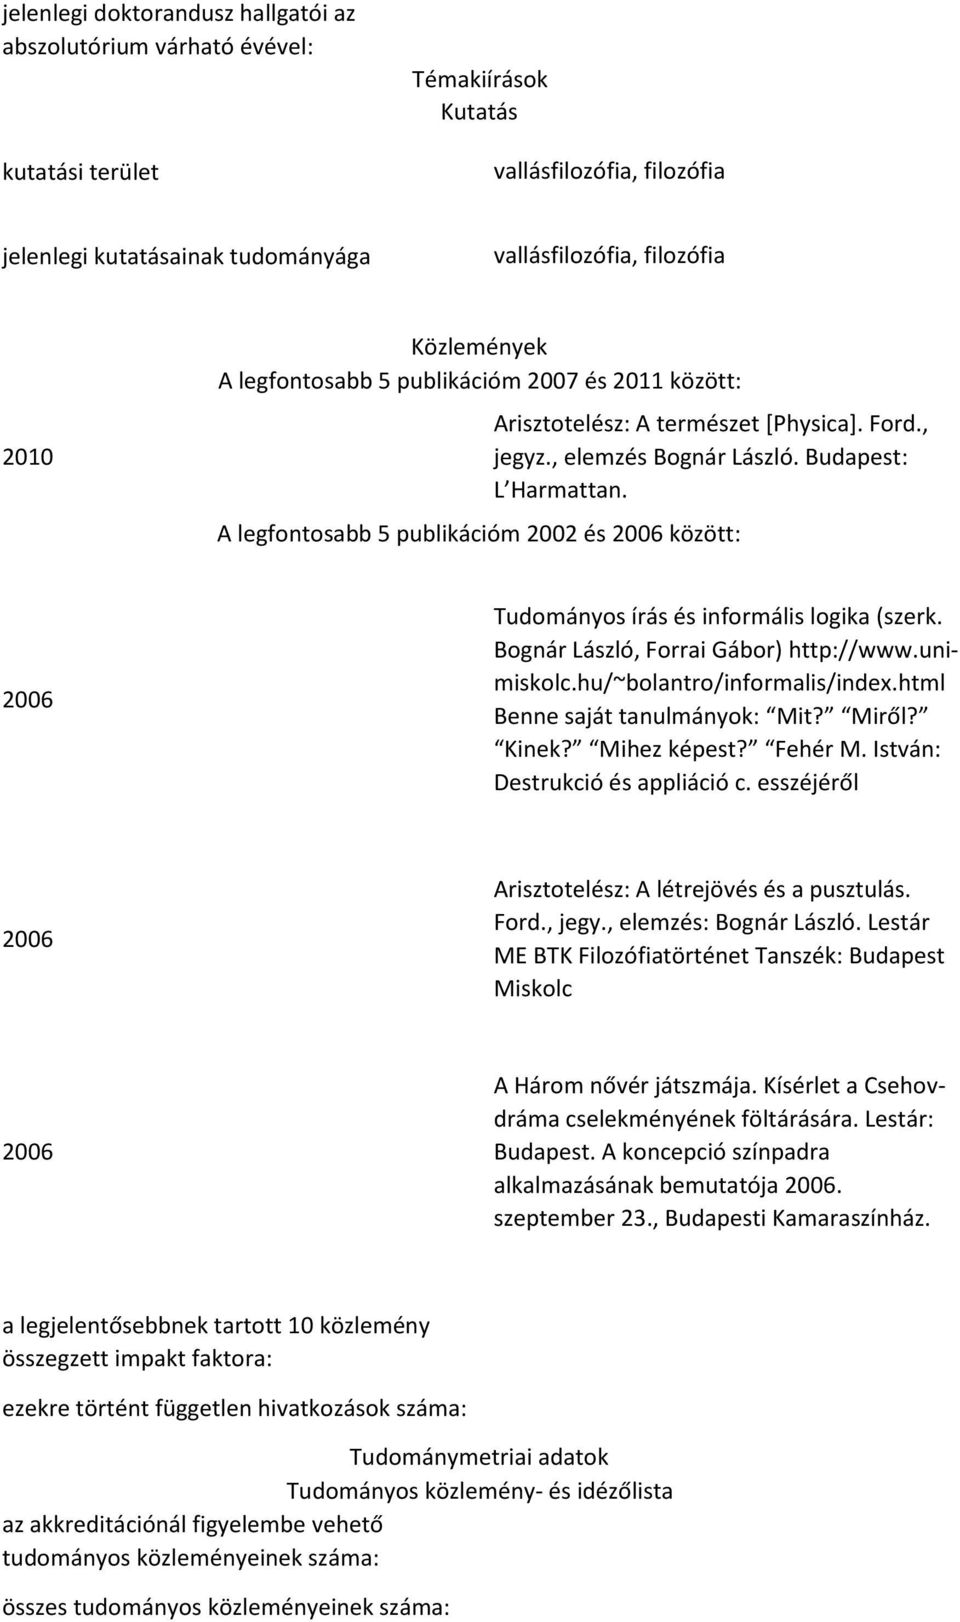 A legfontosabb 5 publikációm 2002 és 2006 között: 2006 Tudományos írás és informális logika (szerk. Bognár László, Forrai Gábor) http://www.unimiskolc.hu/~bolantro/informalis/index.